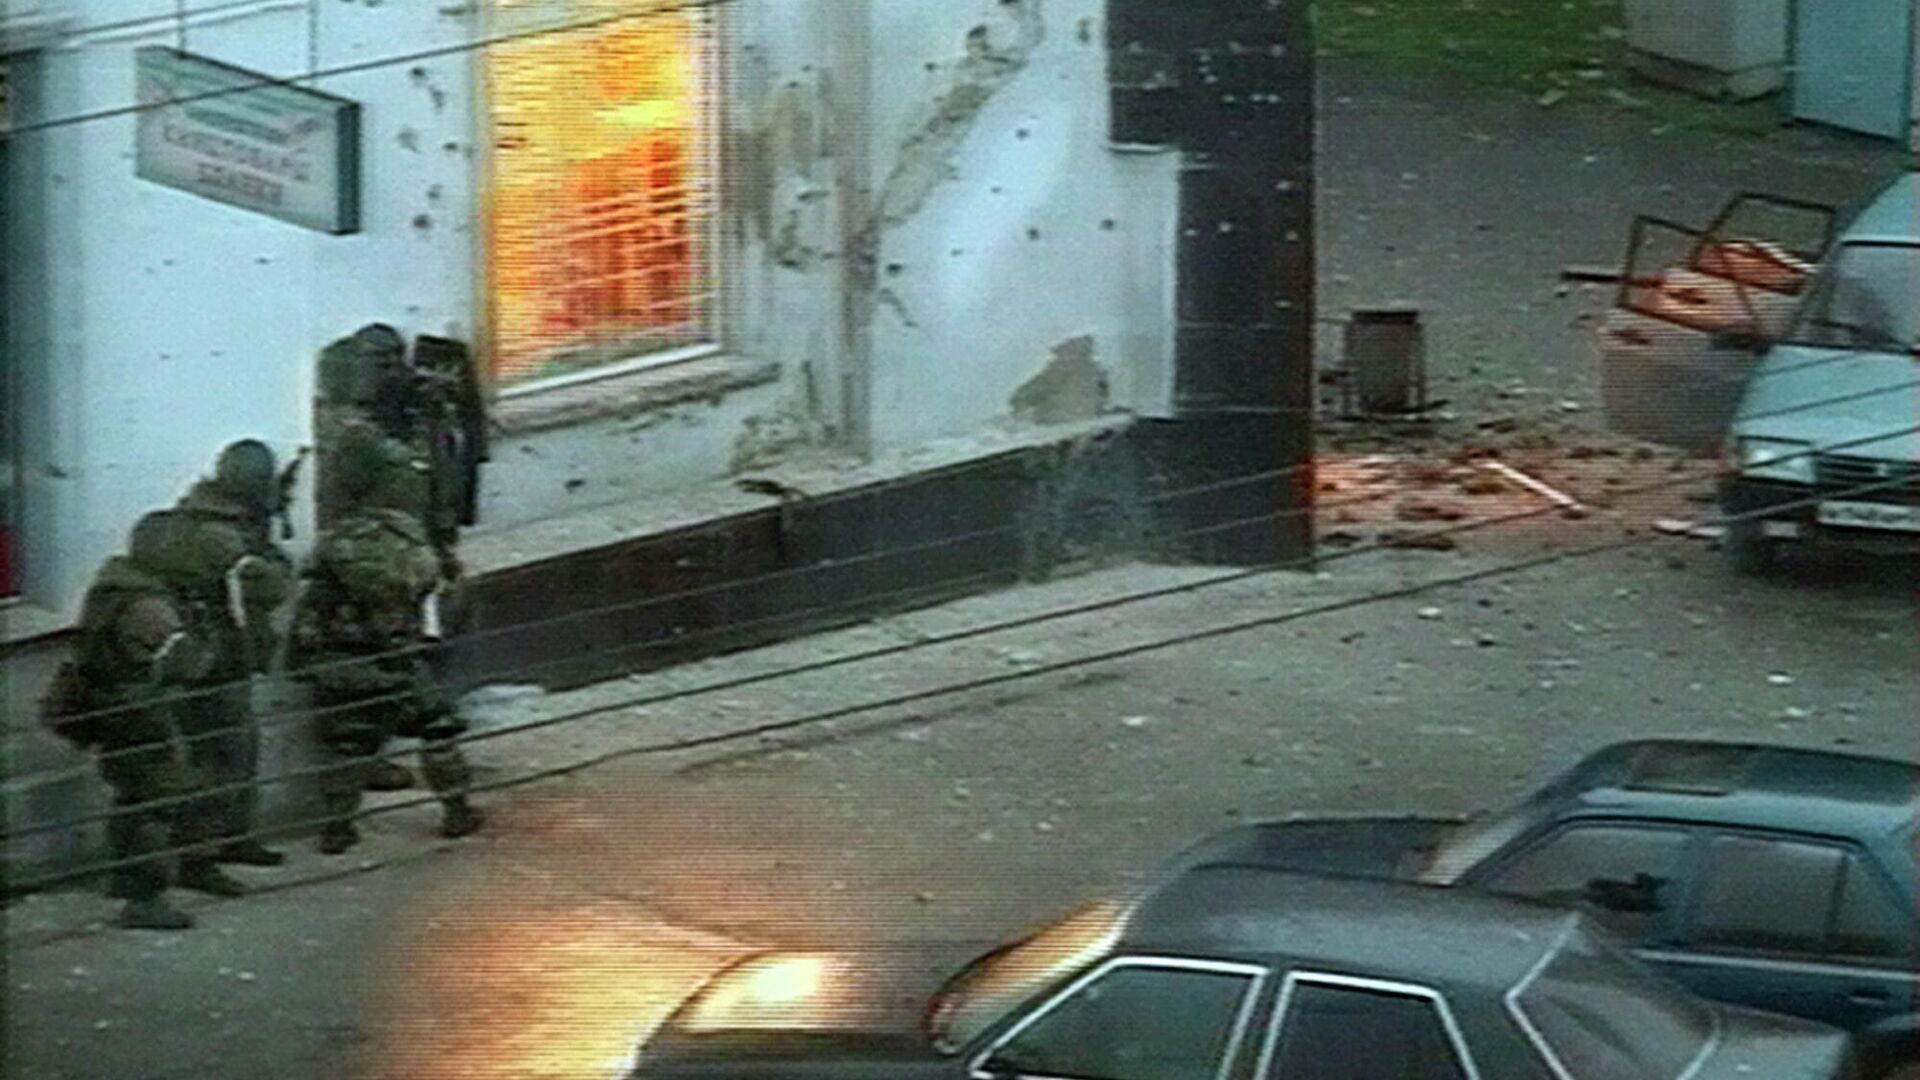 Спецназ во время операции по уничтожению террористов в городе Нальчик 13 октября 2005 - РИА Новости, 1920, 13.10.2020